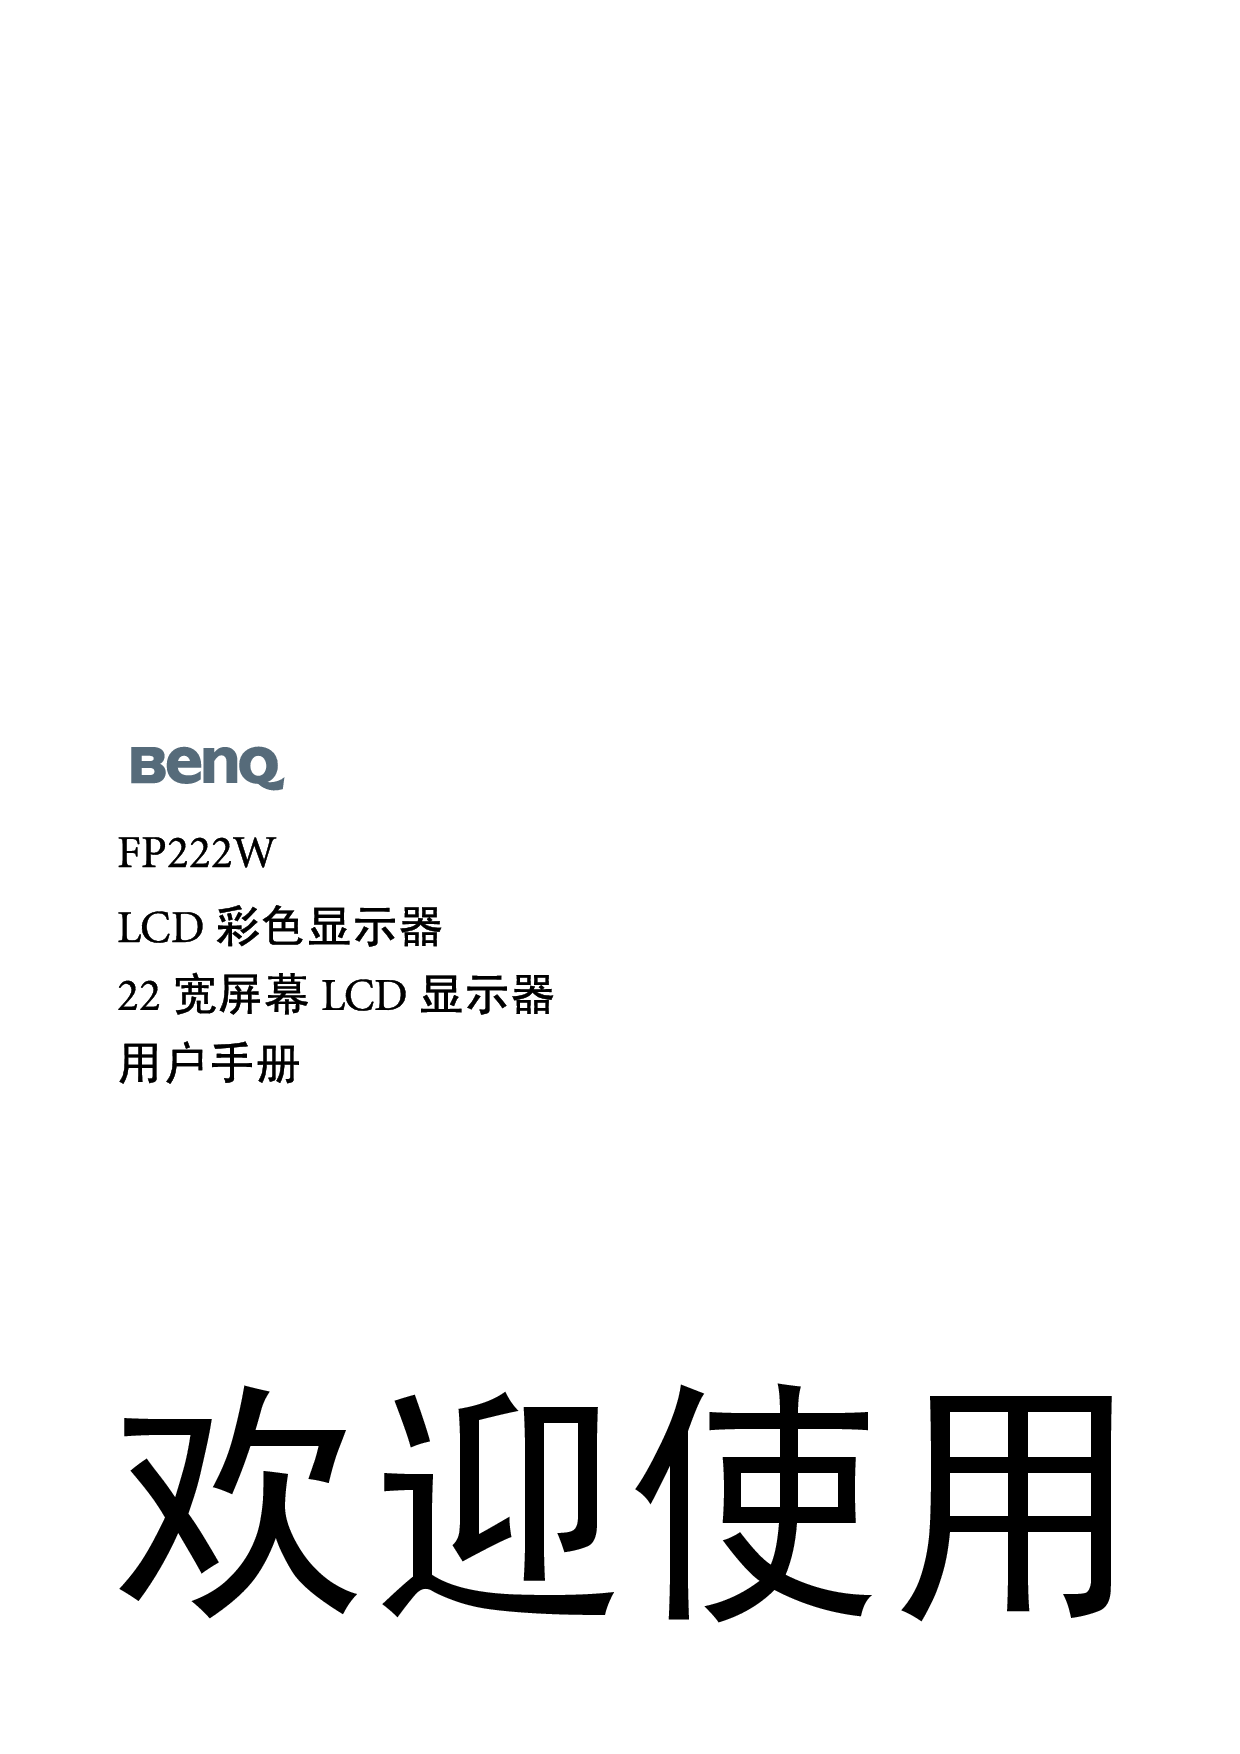 明基 Benq FP222W 使用手册 封面